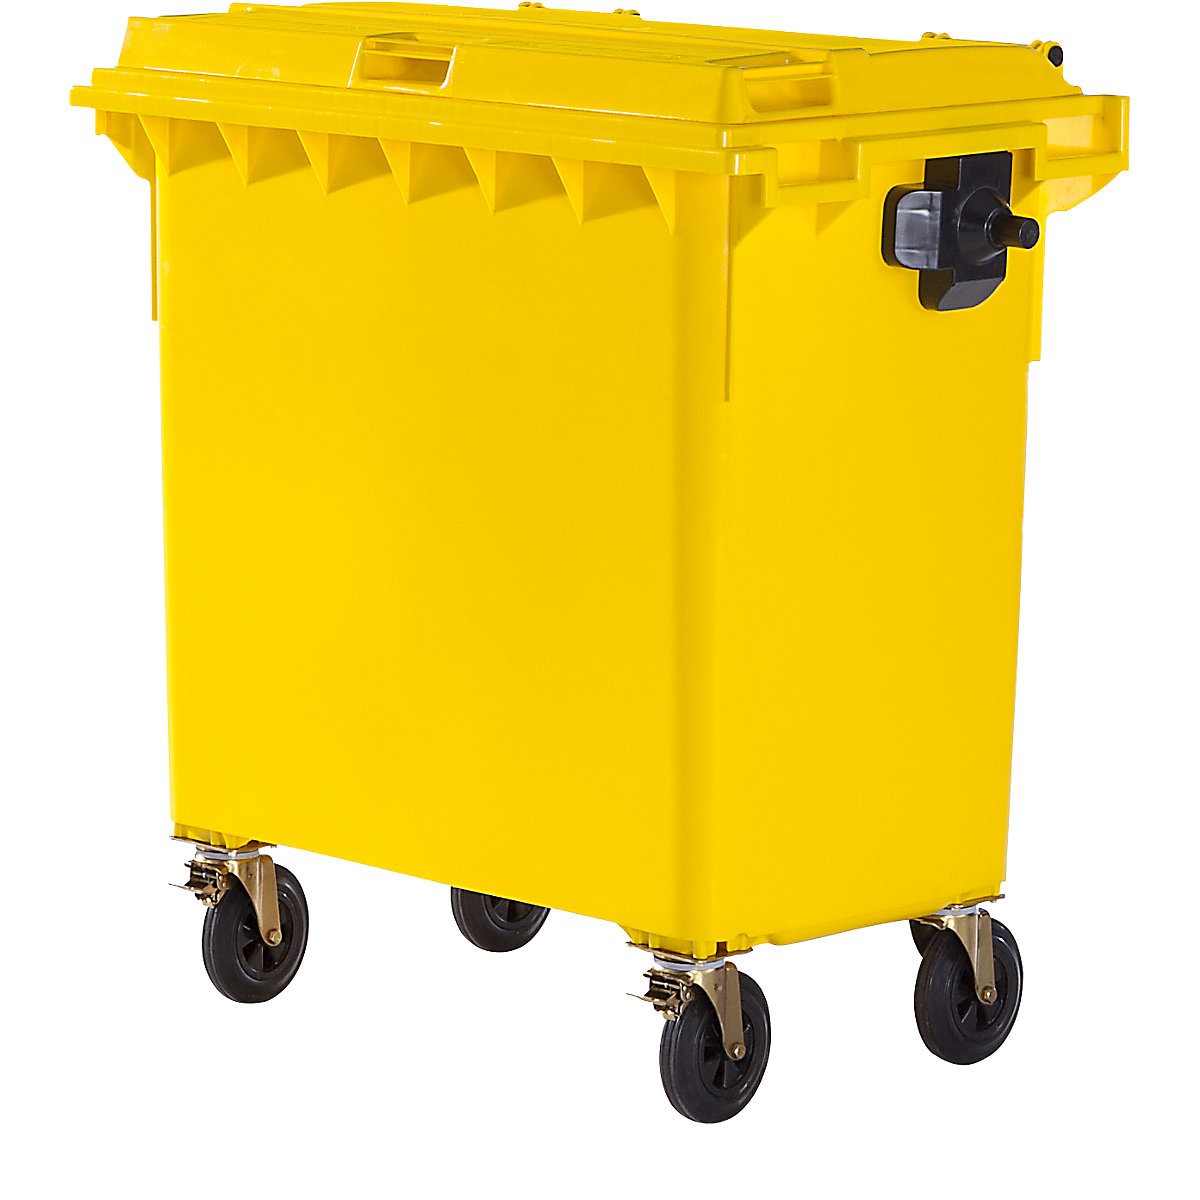 Pojemnik na odpady, z tworzywa, DIN EN 840, poj. 770 l, szer. x wys. x głęb. 1360 x 1330 x 770 mm, żółty, dostawa od 5 szt.-4